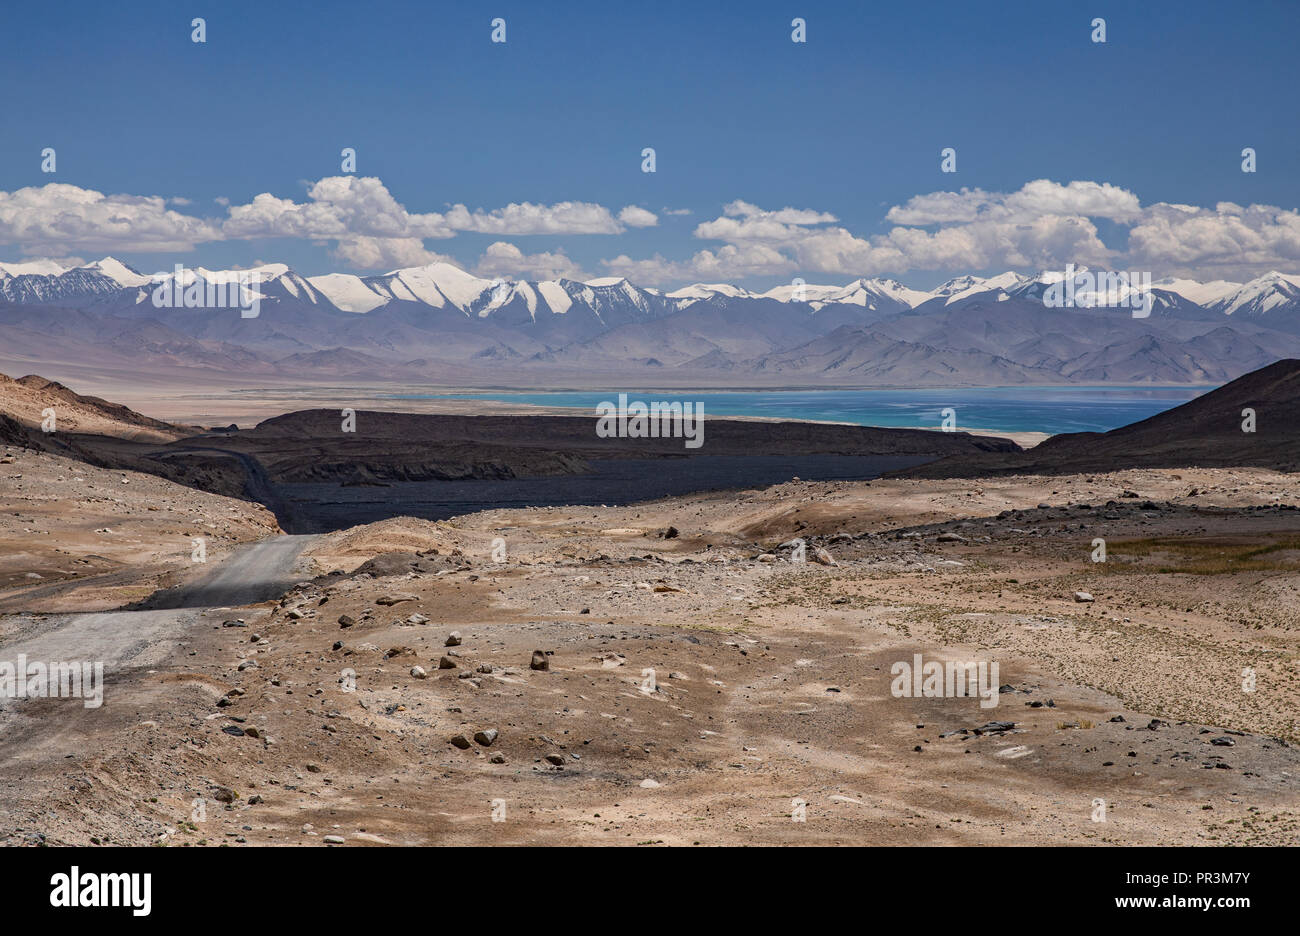 Toma de imágenes en el mando a distancia, desde la carretera de Pamir Kyzyl-Art Pass en la ruta hacia el lago Karakul en Tajikiestan Foto de stock